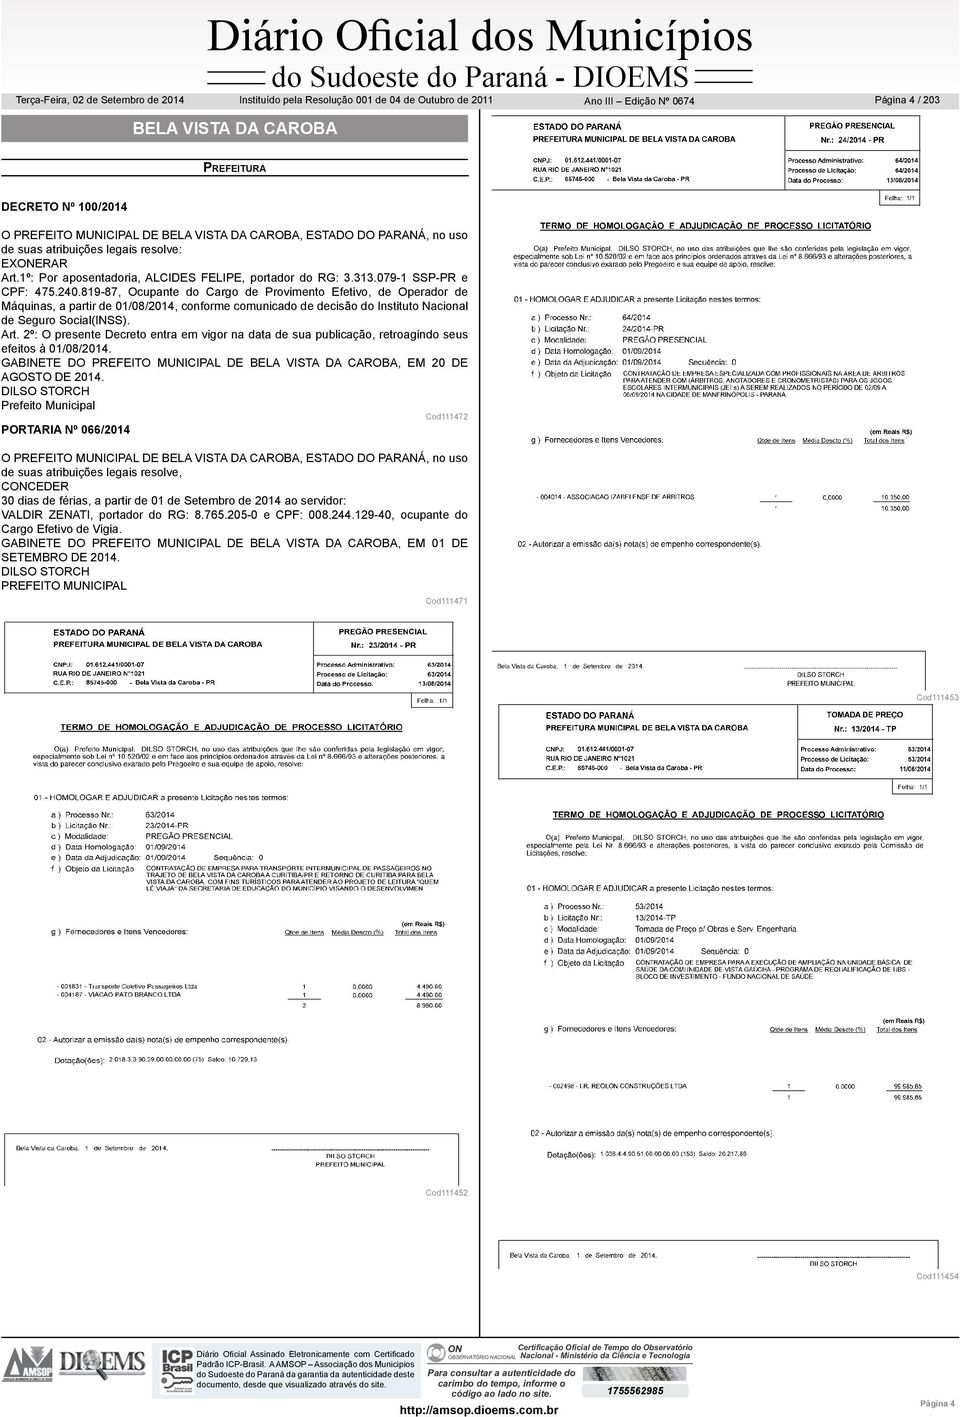 819-87, Ocupante do Cargo de Provimento Efetivo, de Operador de Máquinas, a partir de 01/08/2014, conforme comunicado de decisão do Instituto Nacional de Seguro Social(INSS). Art.